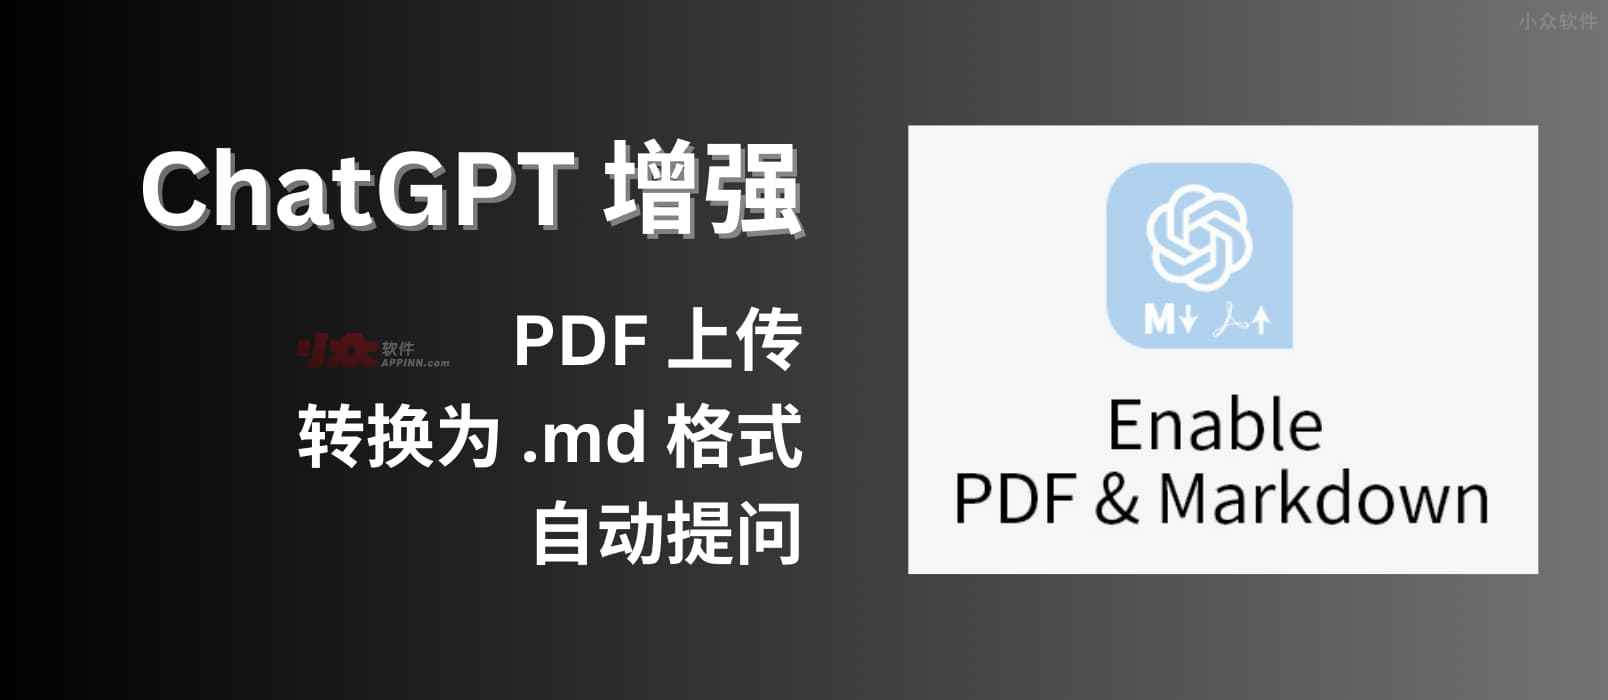 ChatGPT 增强：支持 PDF 上传、转换为 Markdown 格式，自动提问[Chrome 开发中] 1